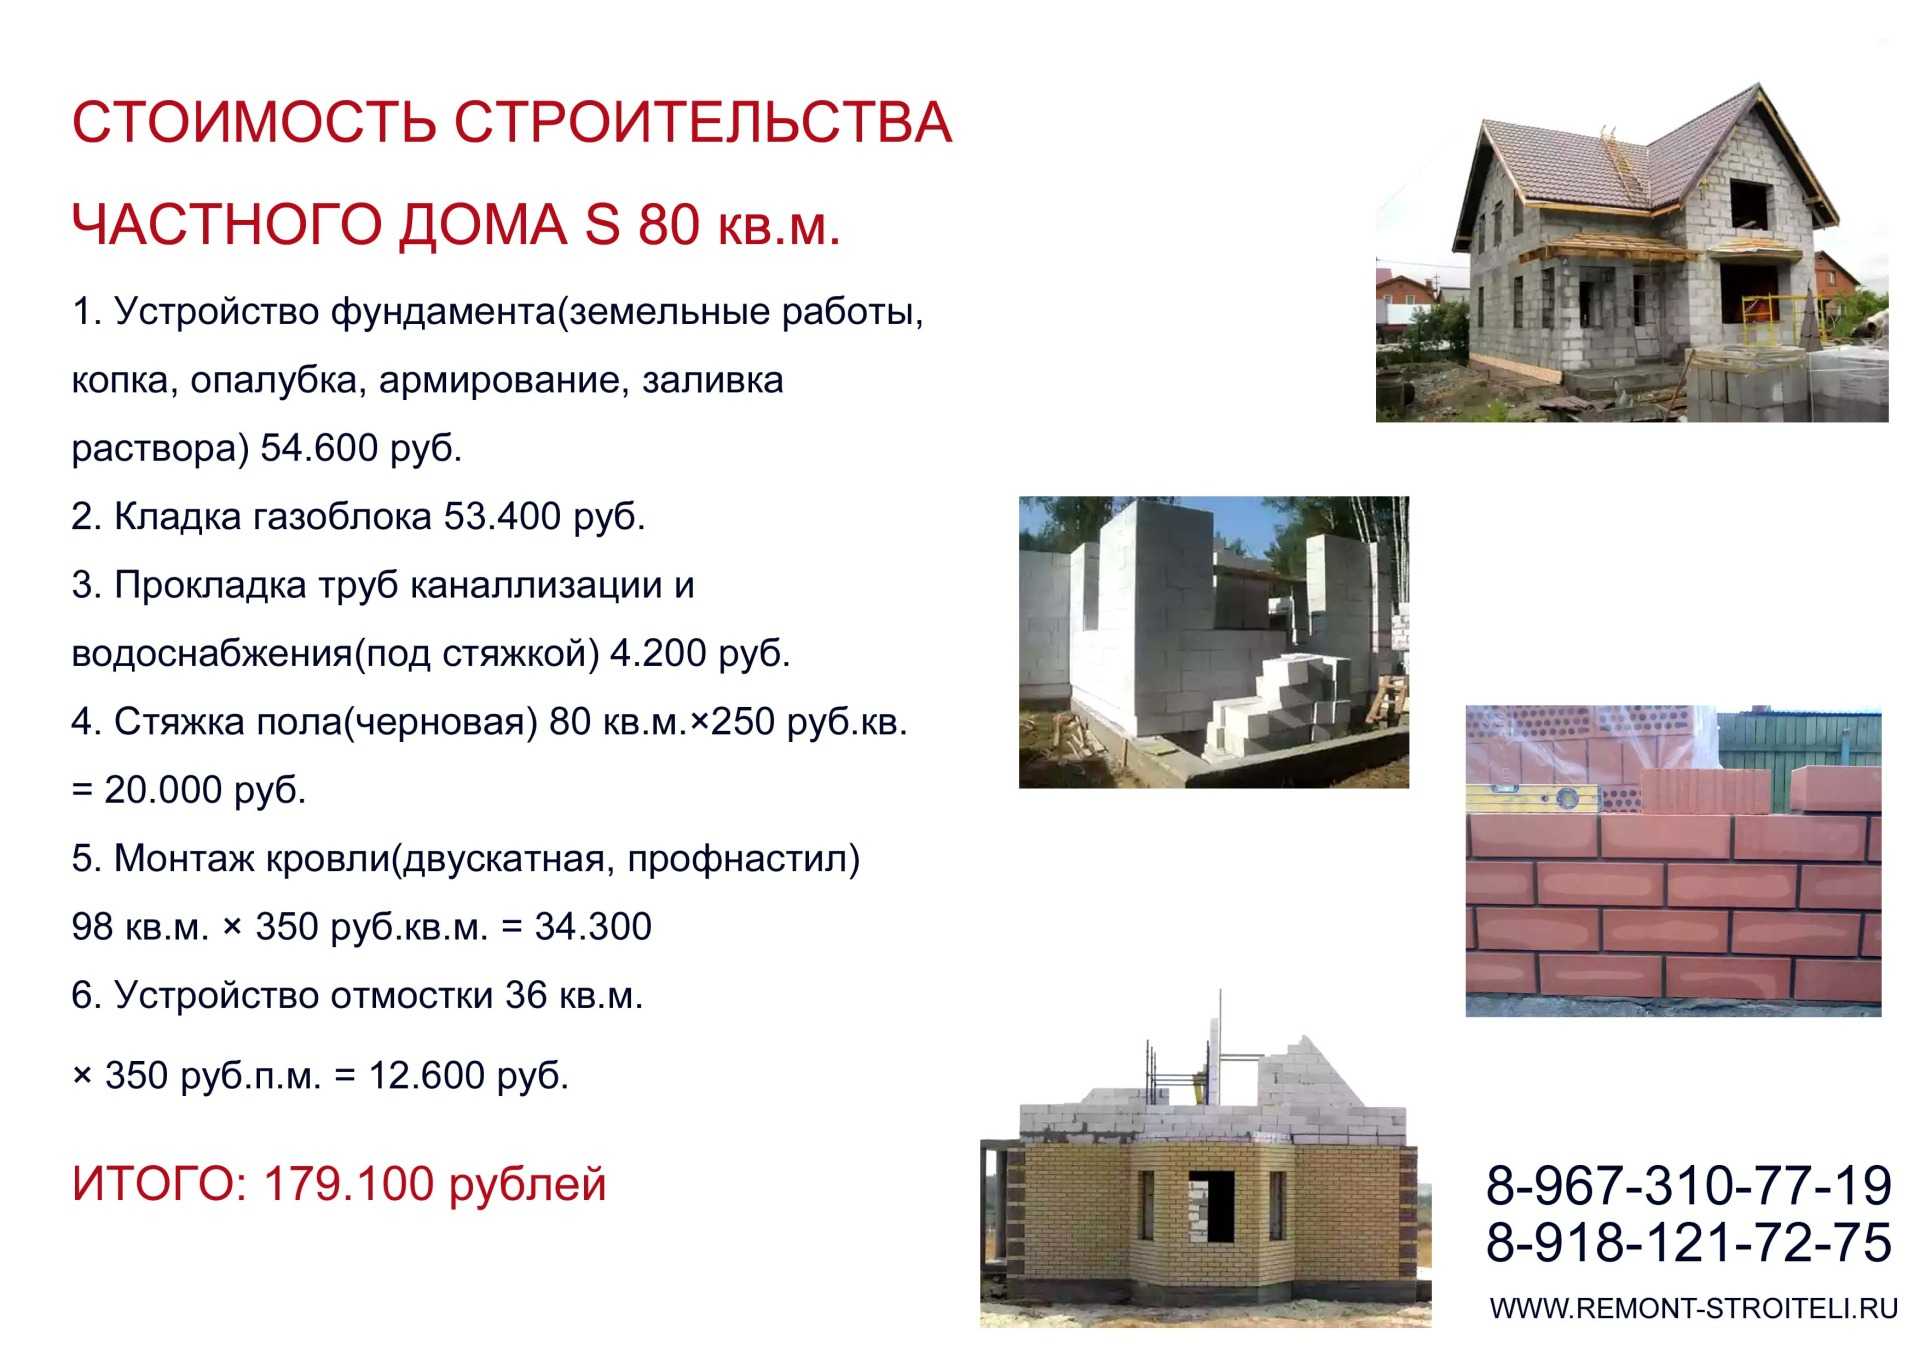 Строительство таунхаусов: преимущества и отзывы :: businessman.ru